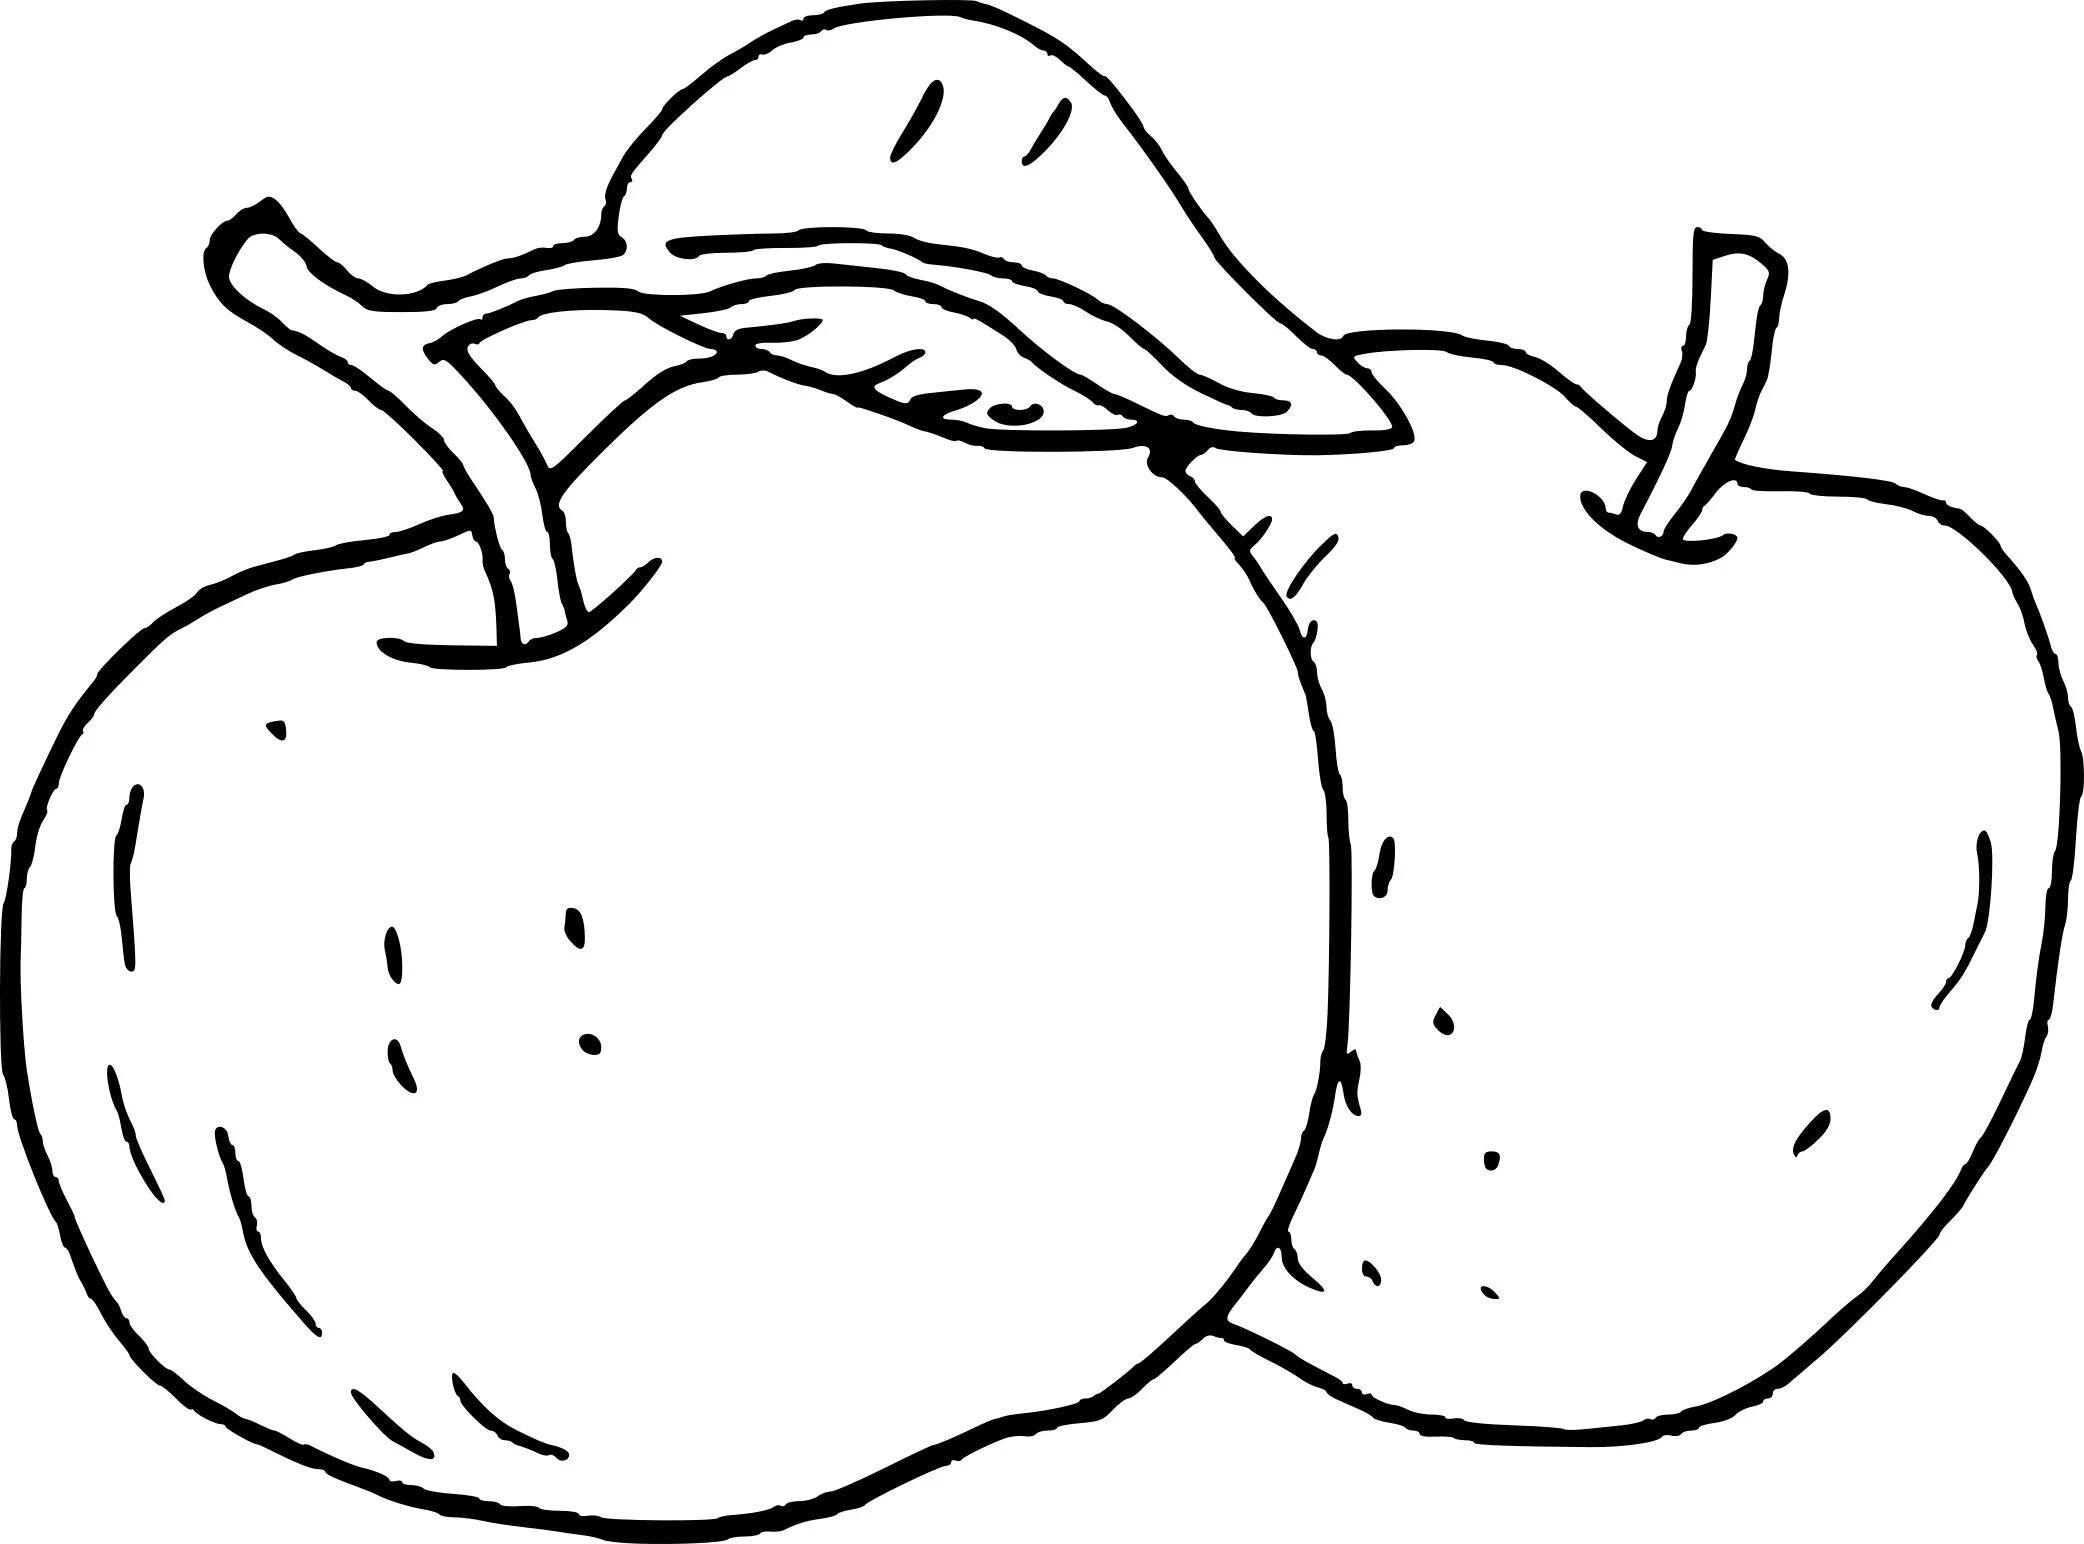 Раскраска 3 яблока. Фрукты. Раскраска. Фрукты раскраска для детей. Фрукты. Раскраска для малышей. Яблоко раскраска для детей.